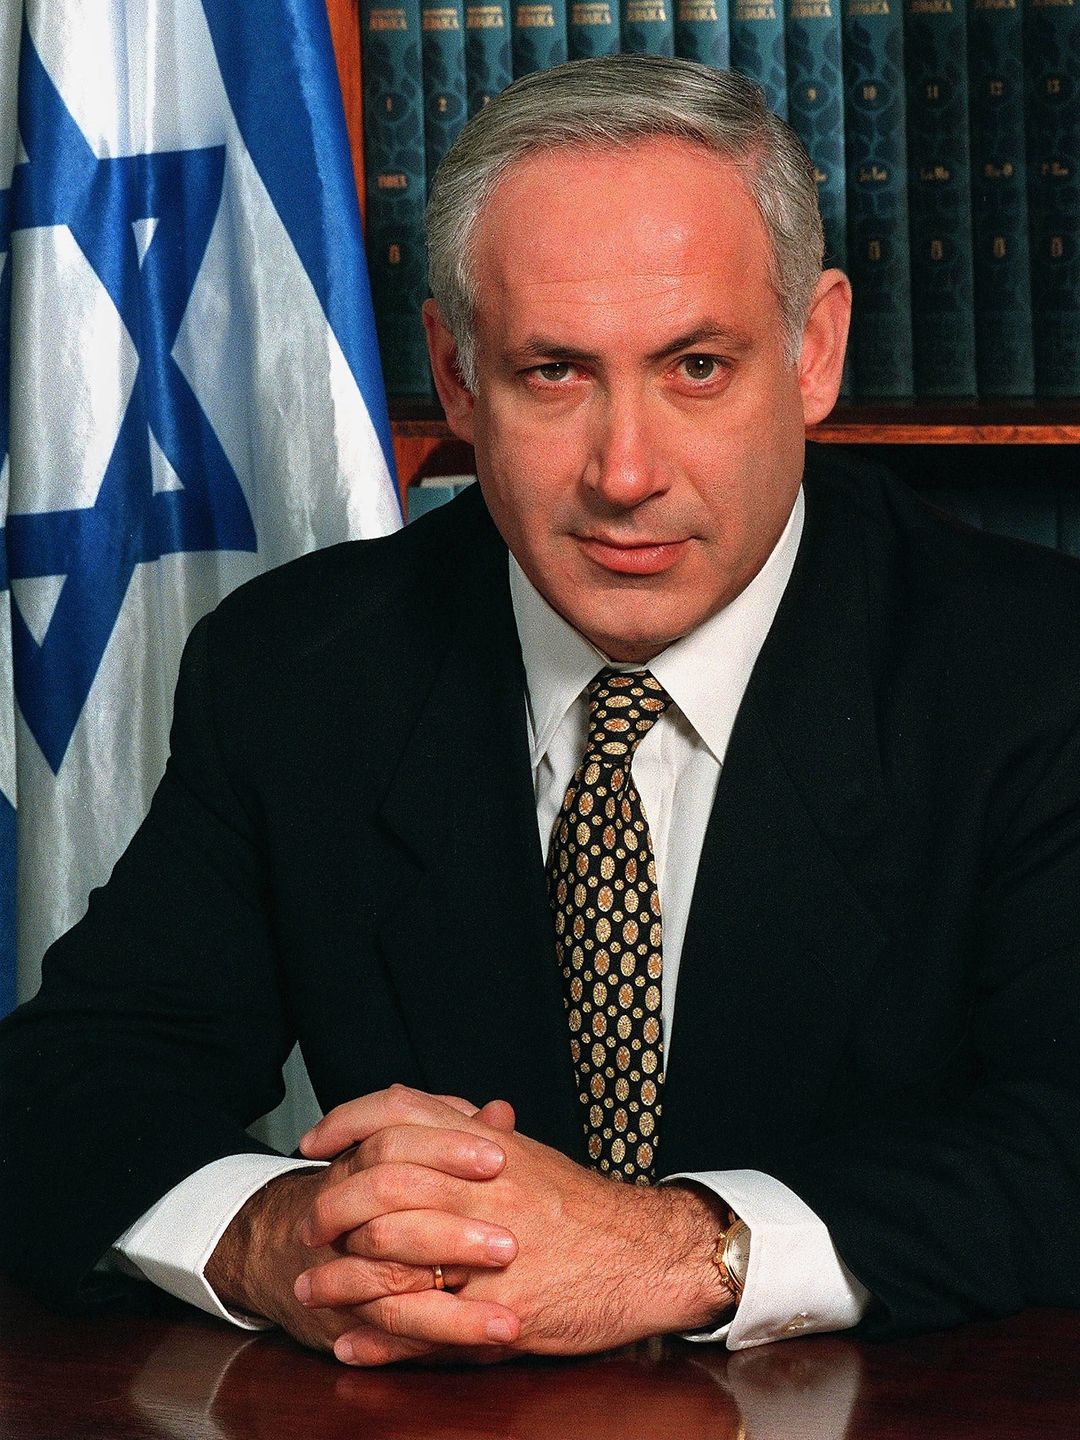 Benjamin Netanyahu early childhood